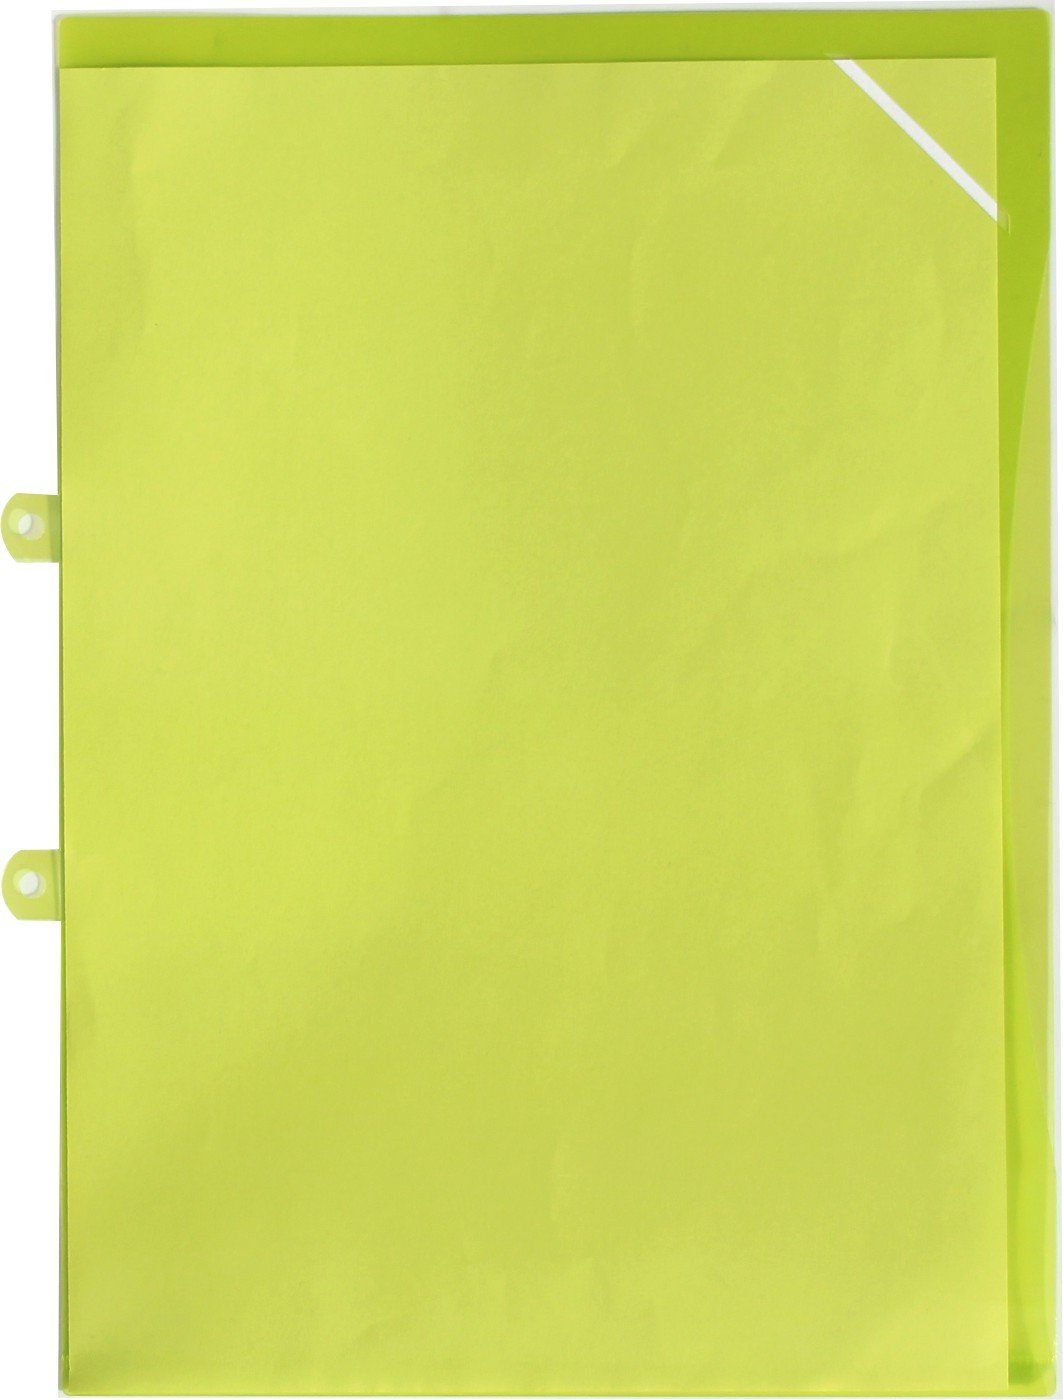 EXXO by HFP Dokumententasche Sichthüllen / Aktenhüllen A4 aus PP (10er Packung), mit Abheftvorrichtung, Sicherheitsecke, oben und seitlich offen Transparent Limone